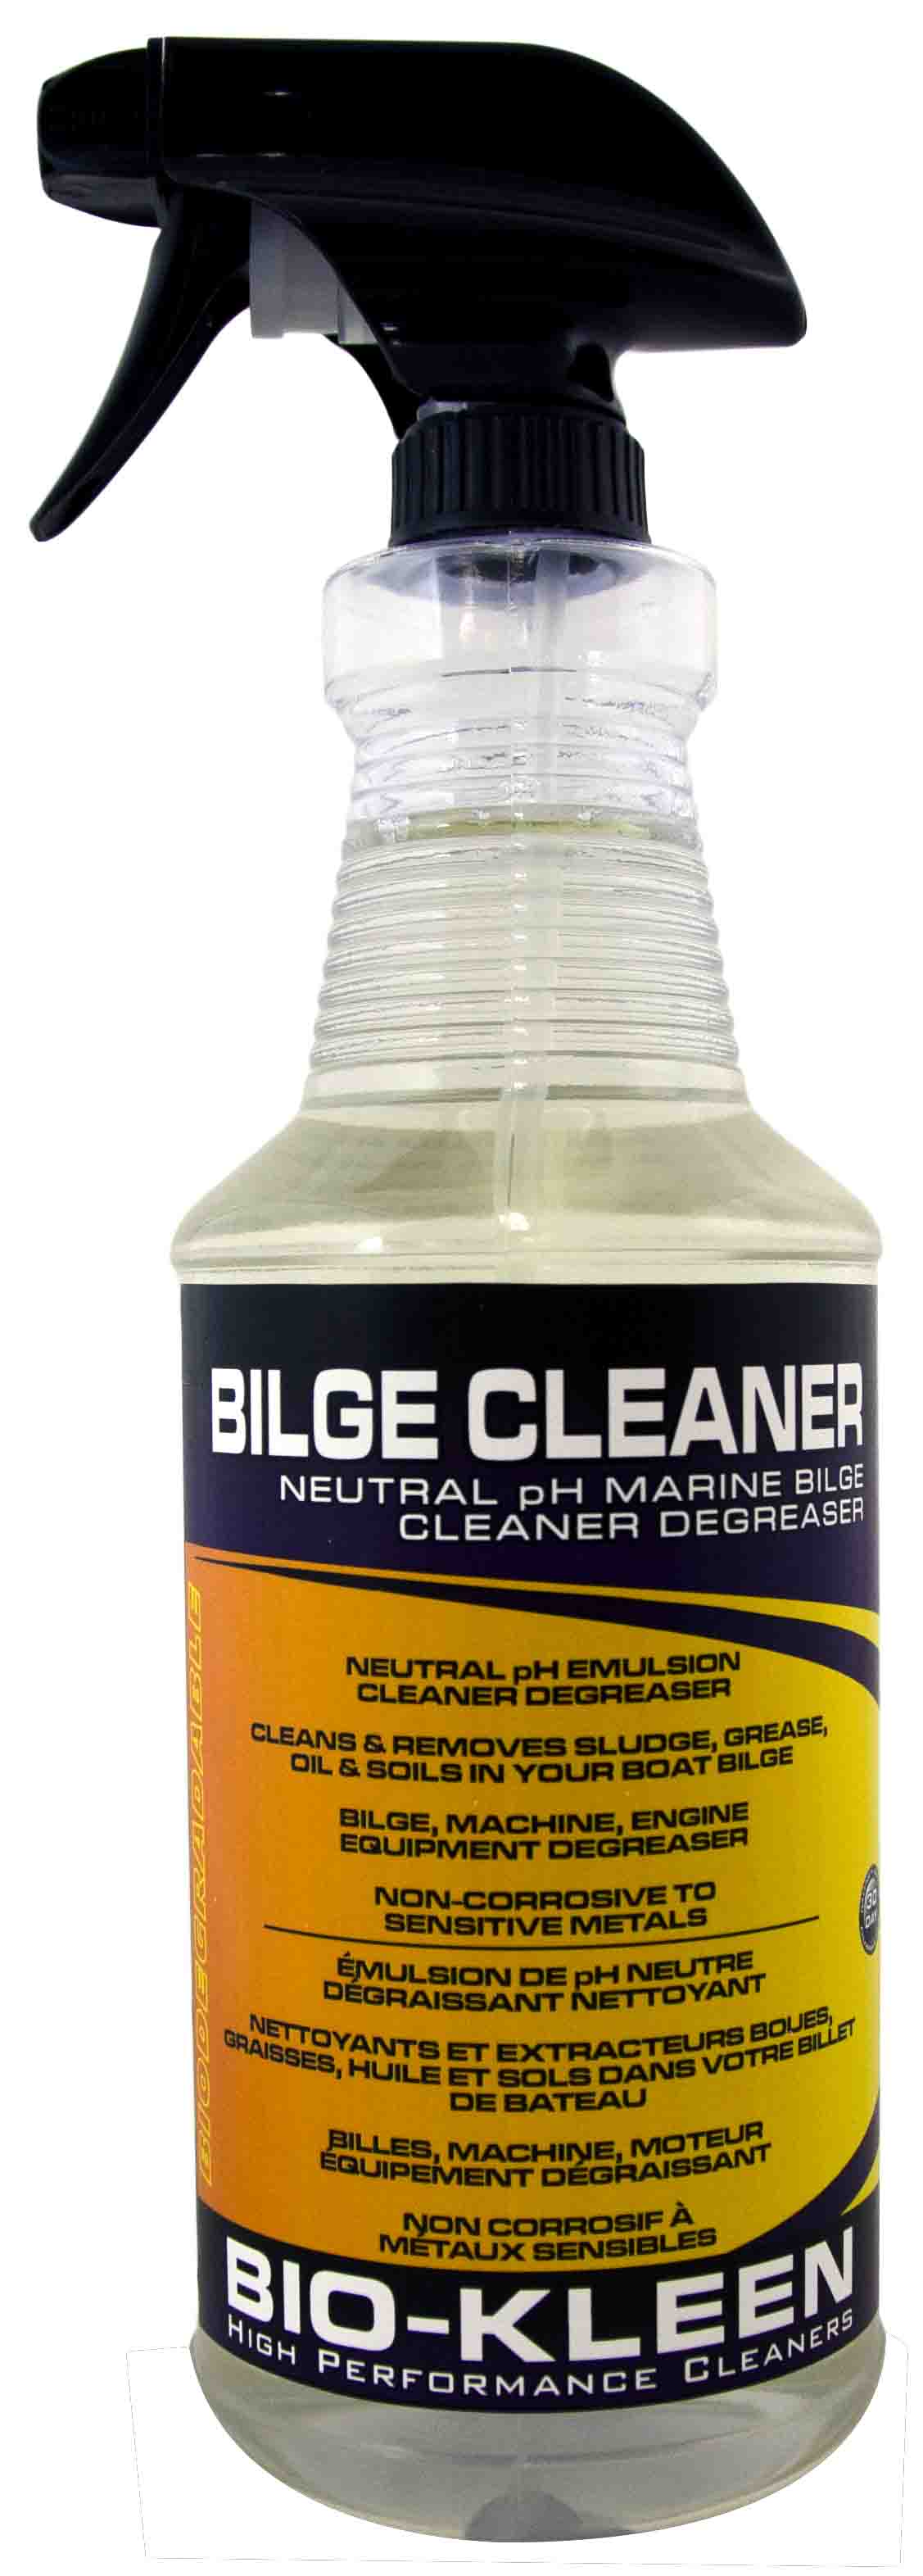 Bilge Cleaner bilge cleaner, bilge cleaners, boat bilge cleaner, marine bilge cleaner, biodegradable bilge cleaner, eco friendly bilge cleaner